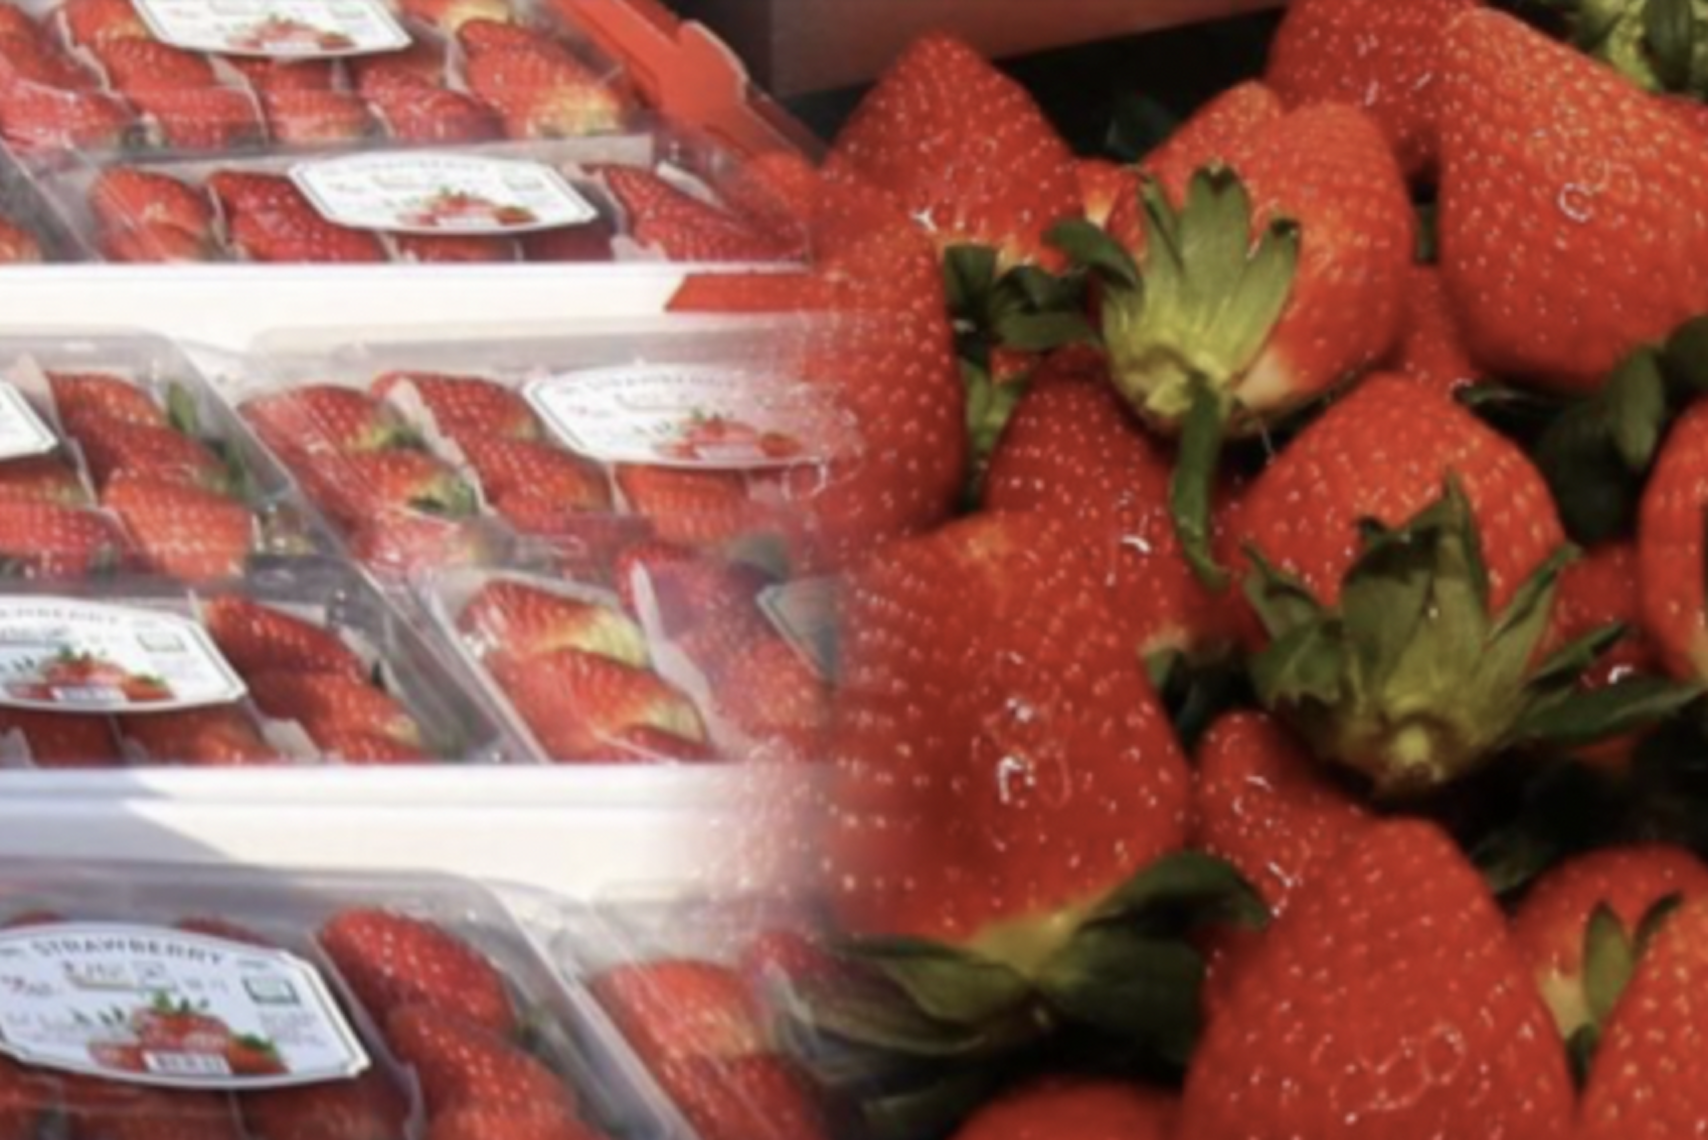 [2023.02.17] 딸기를 시작으로 논산 K-농식품…동남아 시장 공략